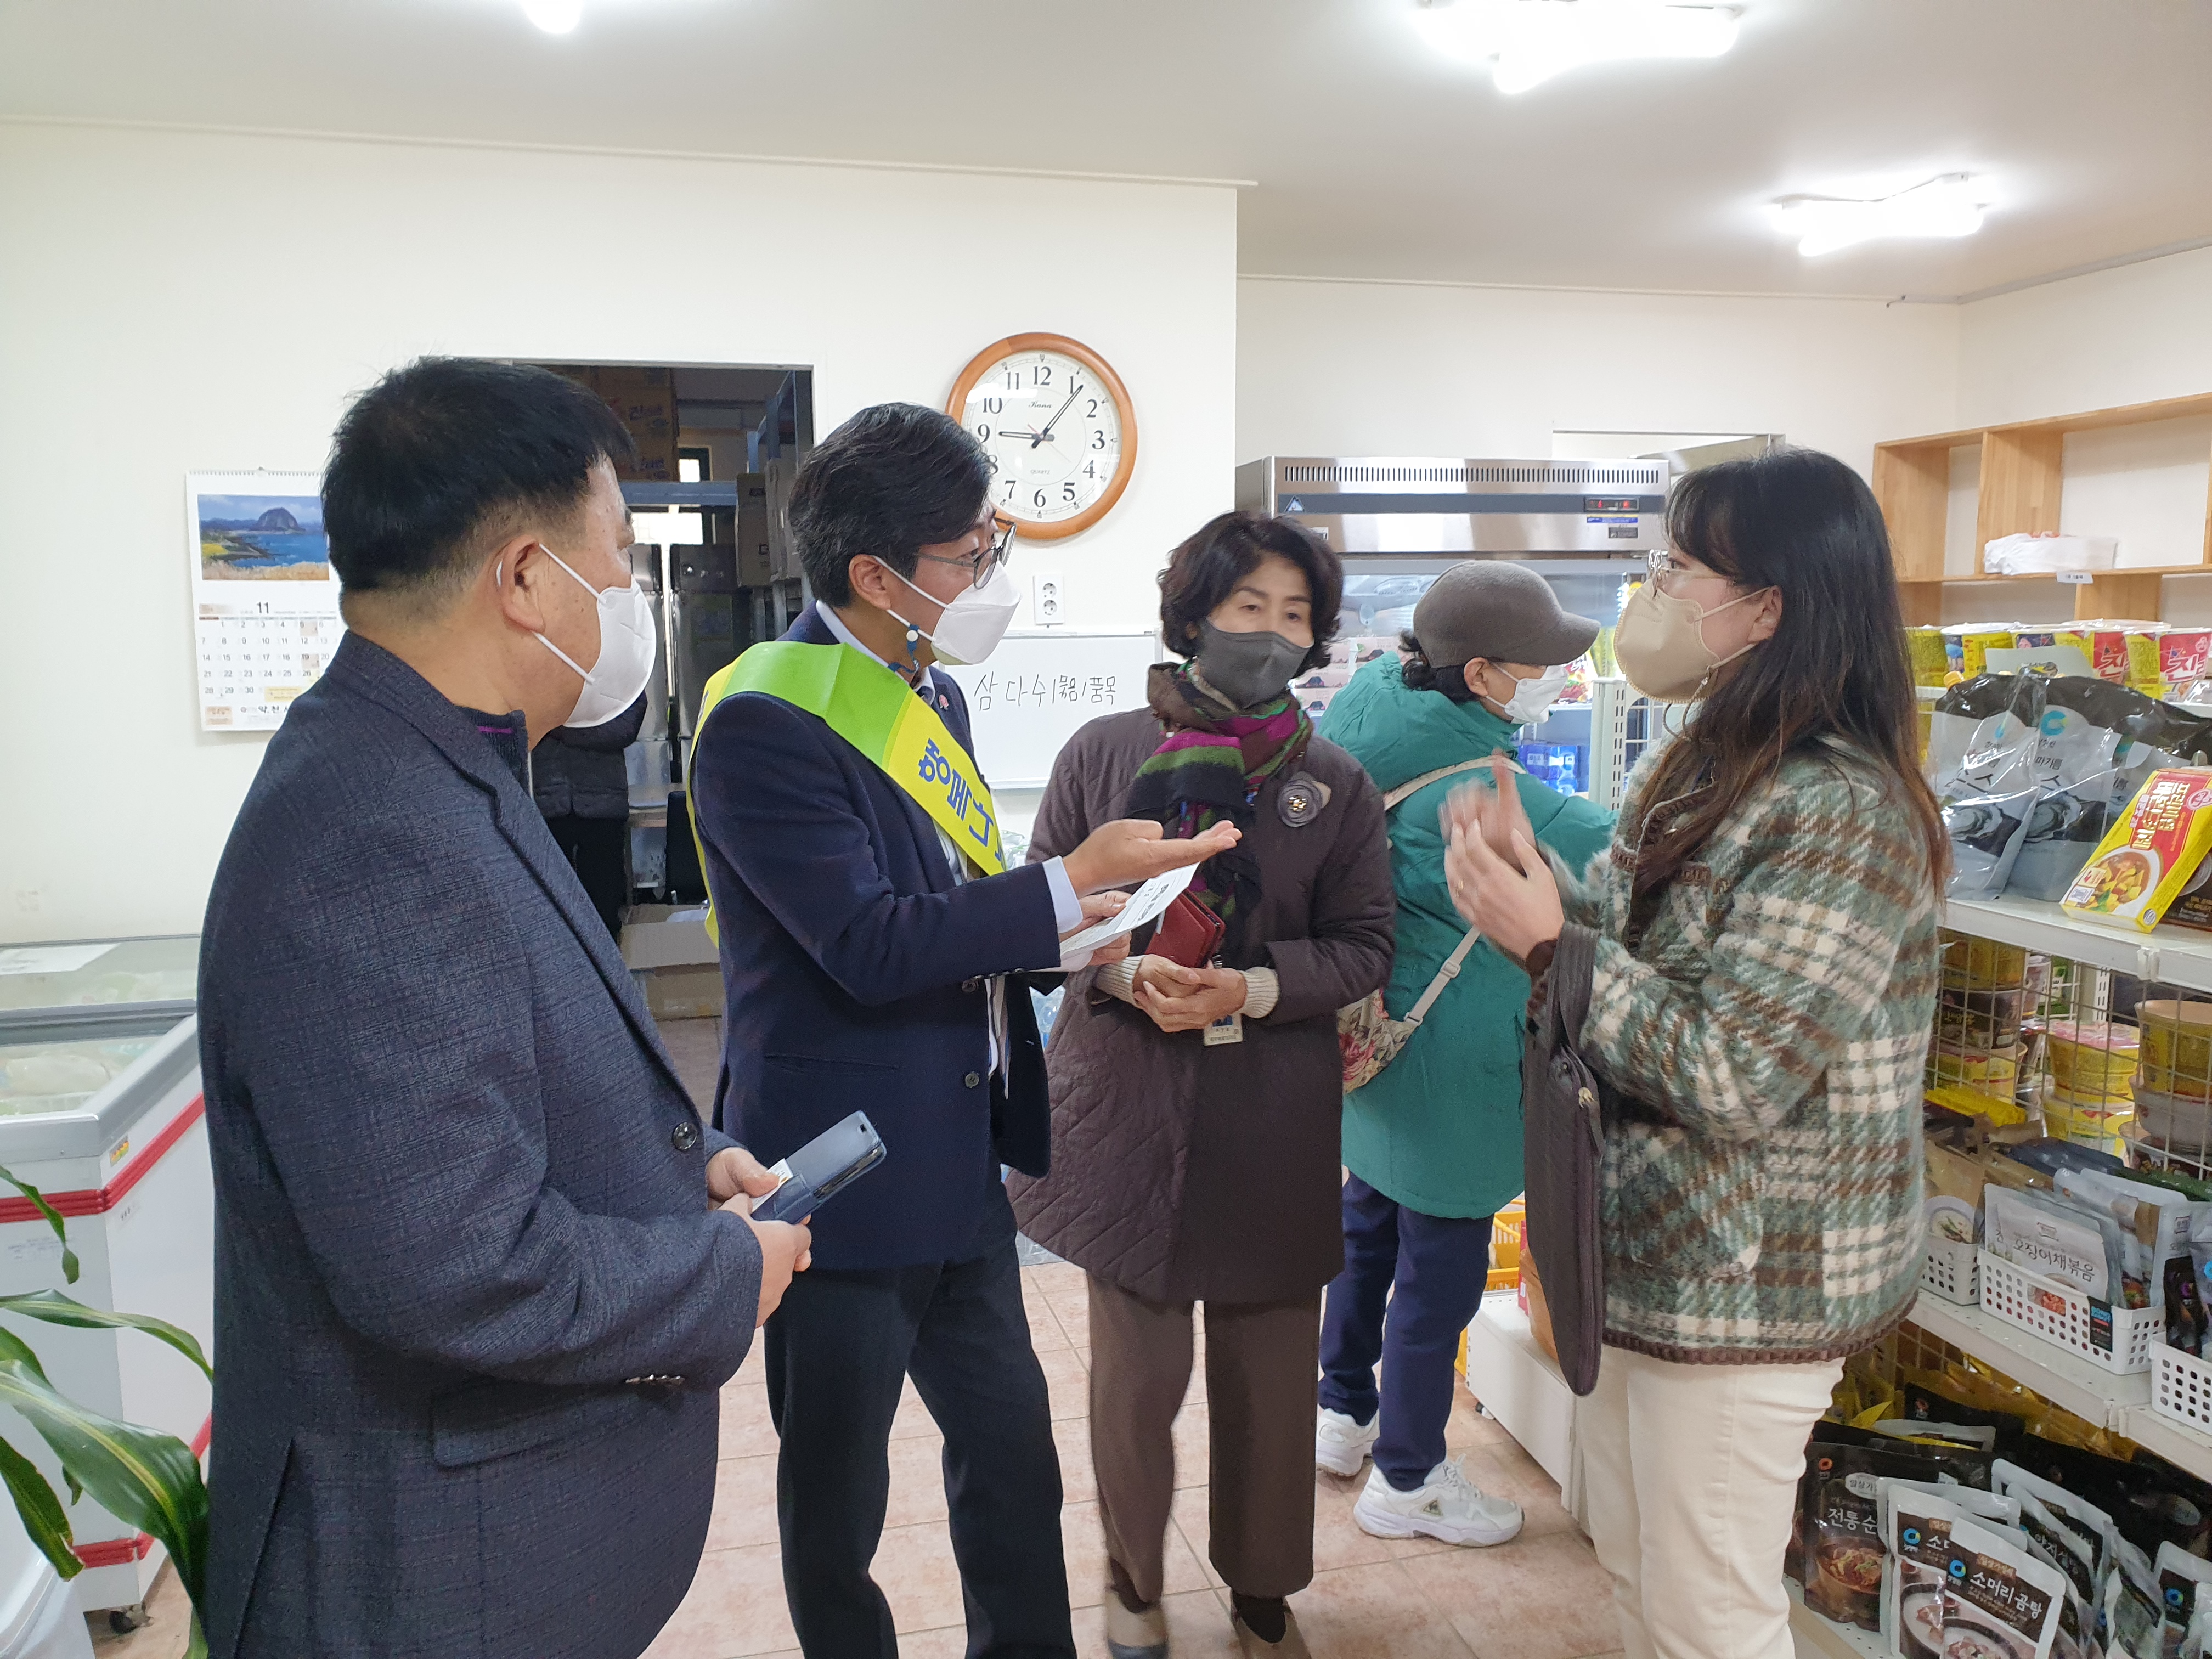 문종태･송영훈 의원 행복나눔 푸드마켓 개최 1일 센터장 체험